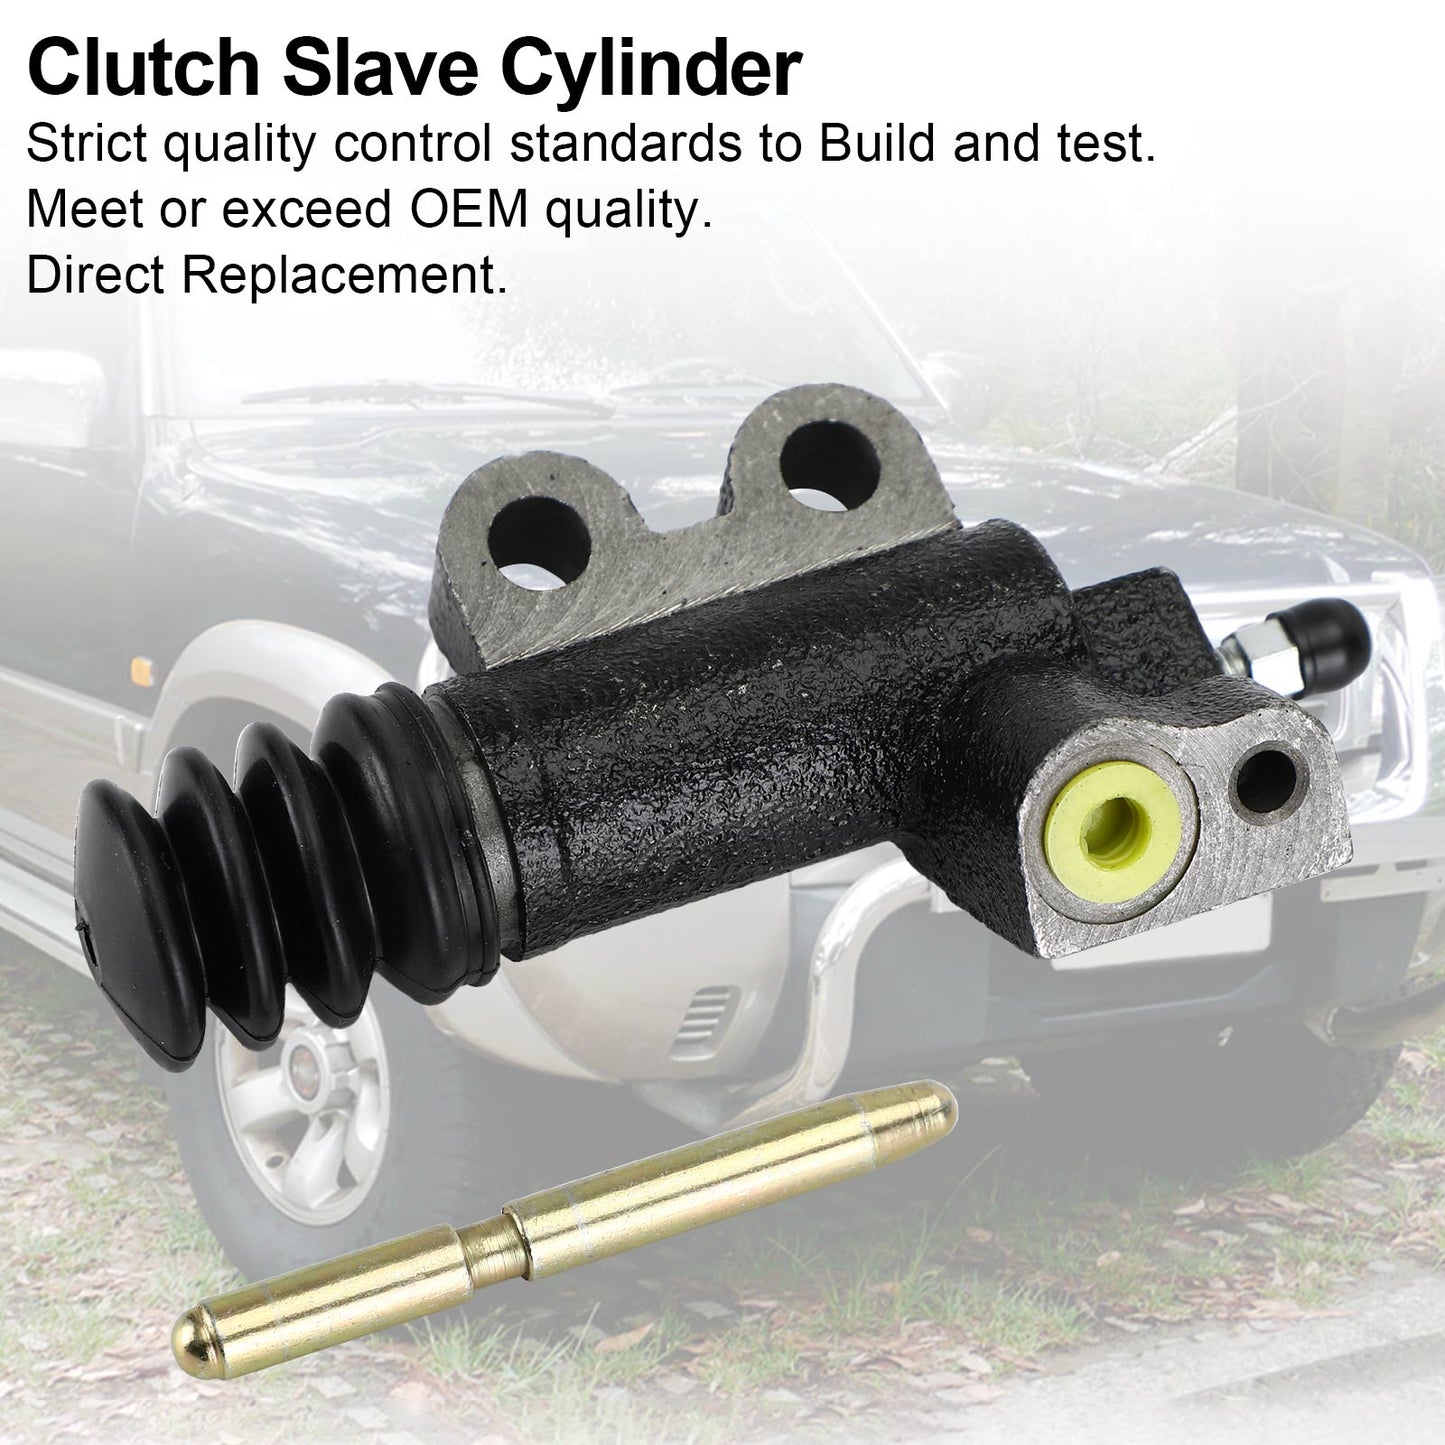 Clutch Slave Cylinder for Nissan Patrol GU Y61 2000-2012 4cyl 3.0L ZD30 Diesel